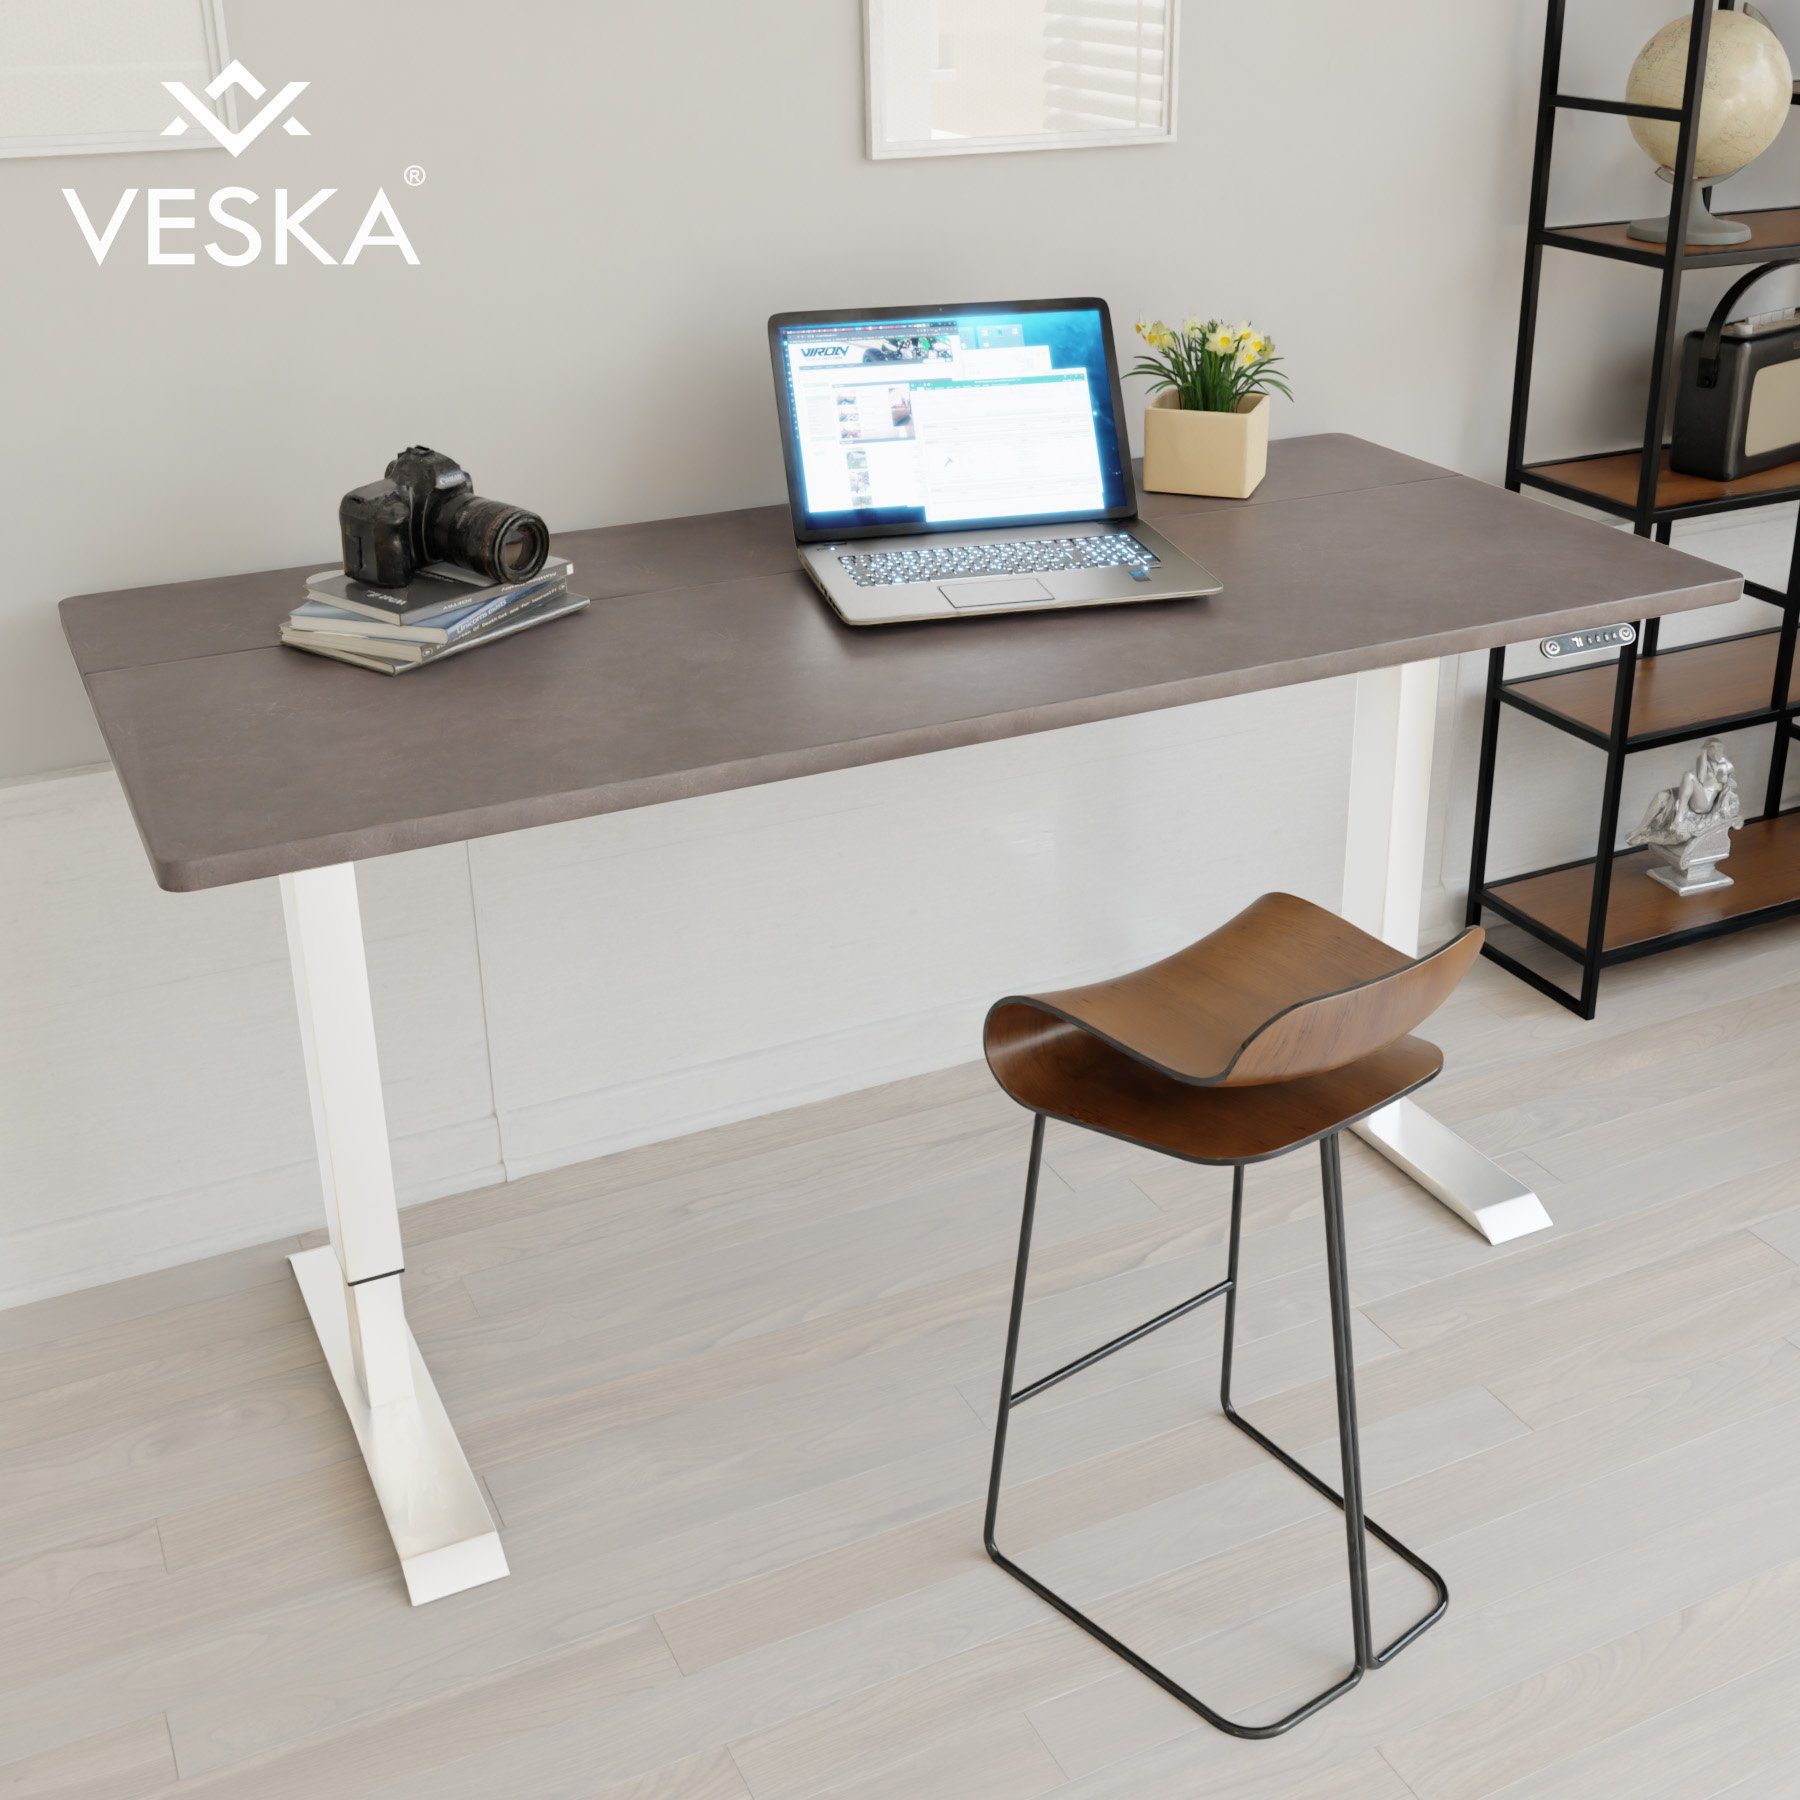 VESKA Schreibtisch Höhenverstellbar 140 x 70 cm - Bürotisch Elektrisch mit Touchscreen - Sitz- & Stehpult Home Office Weiß | Stein-Anthrazit | Kinderschreibtische